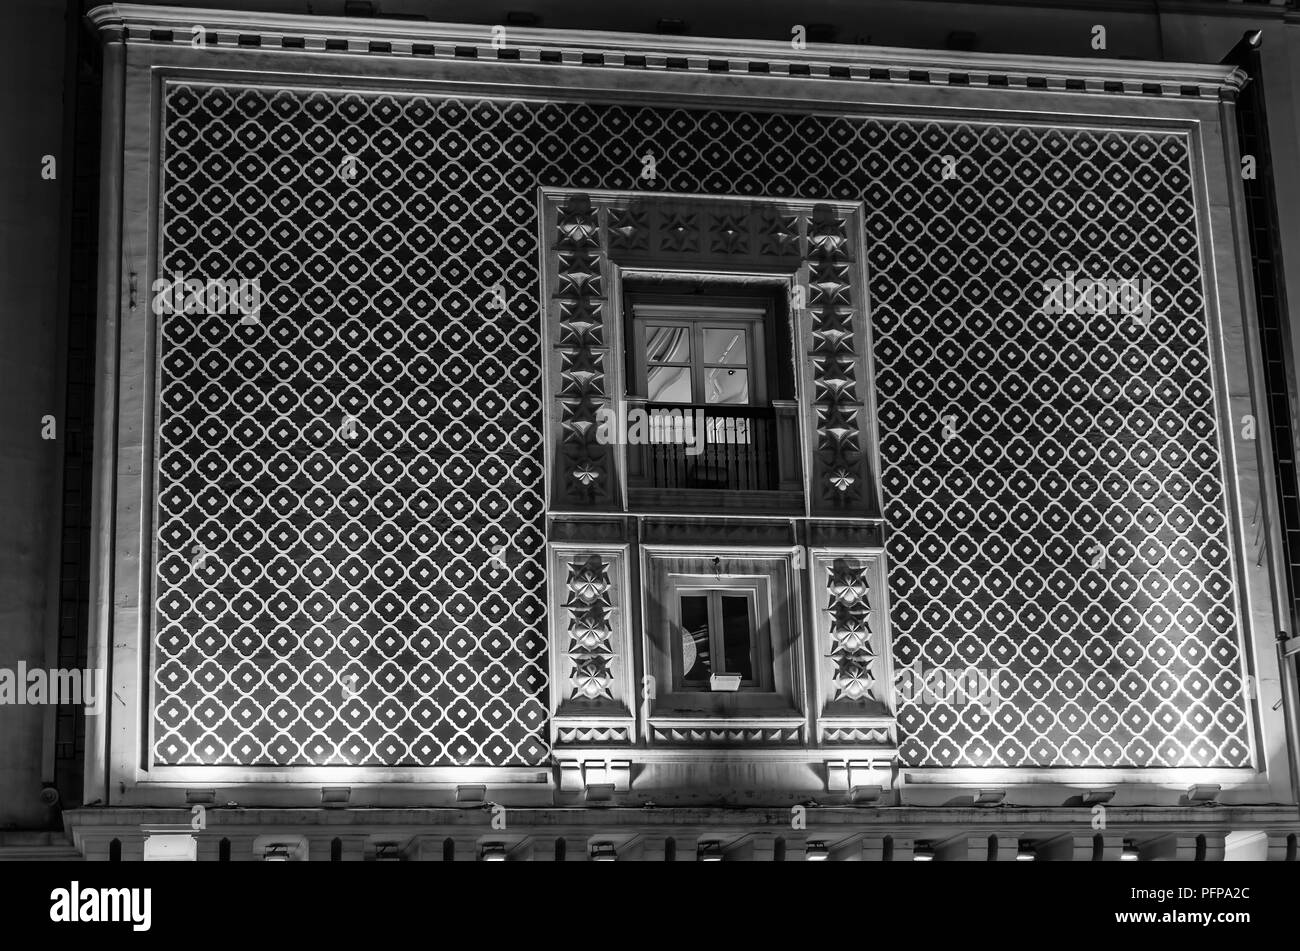 GRANADA, ESPAGNE - février 21, 2015 : Vue de nuit de la façade principale du cinéma Aliatar (Cine Aliatar), beau bâtiment de Granada, Espagne, conçu par Banque D'Images